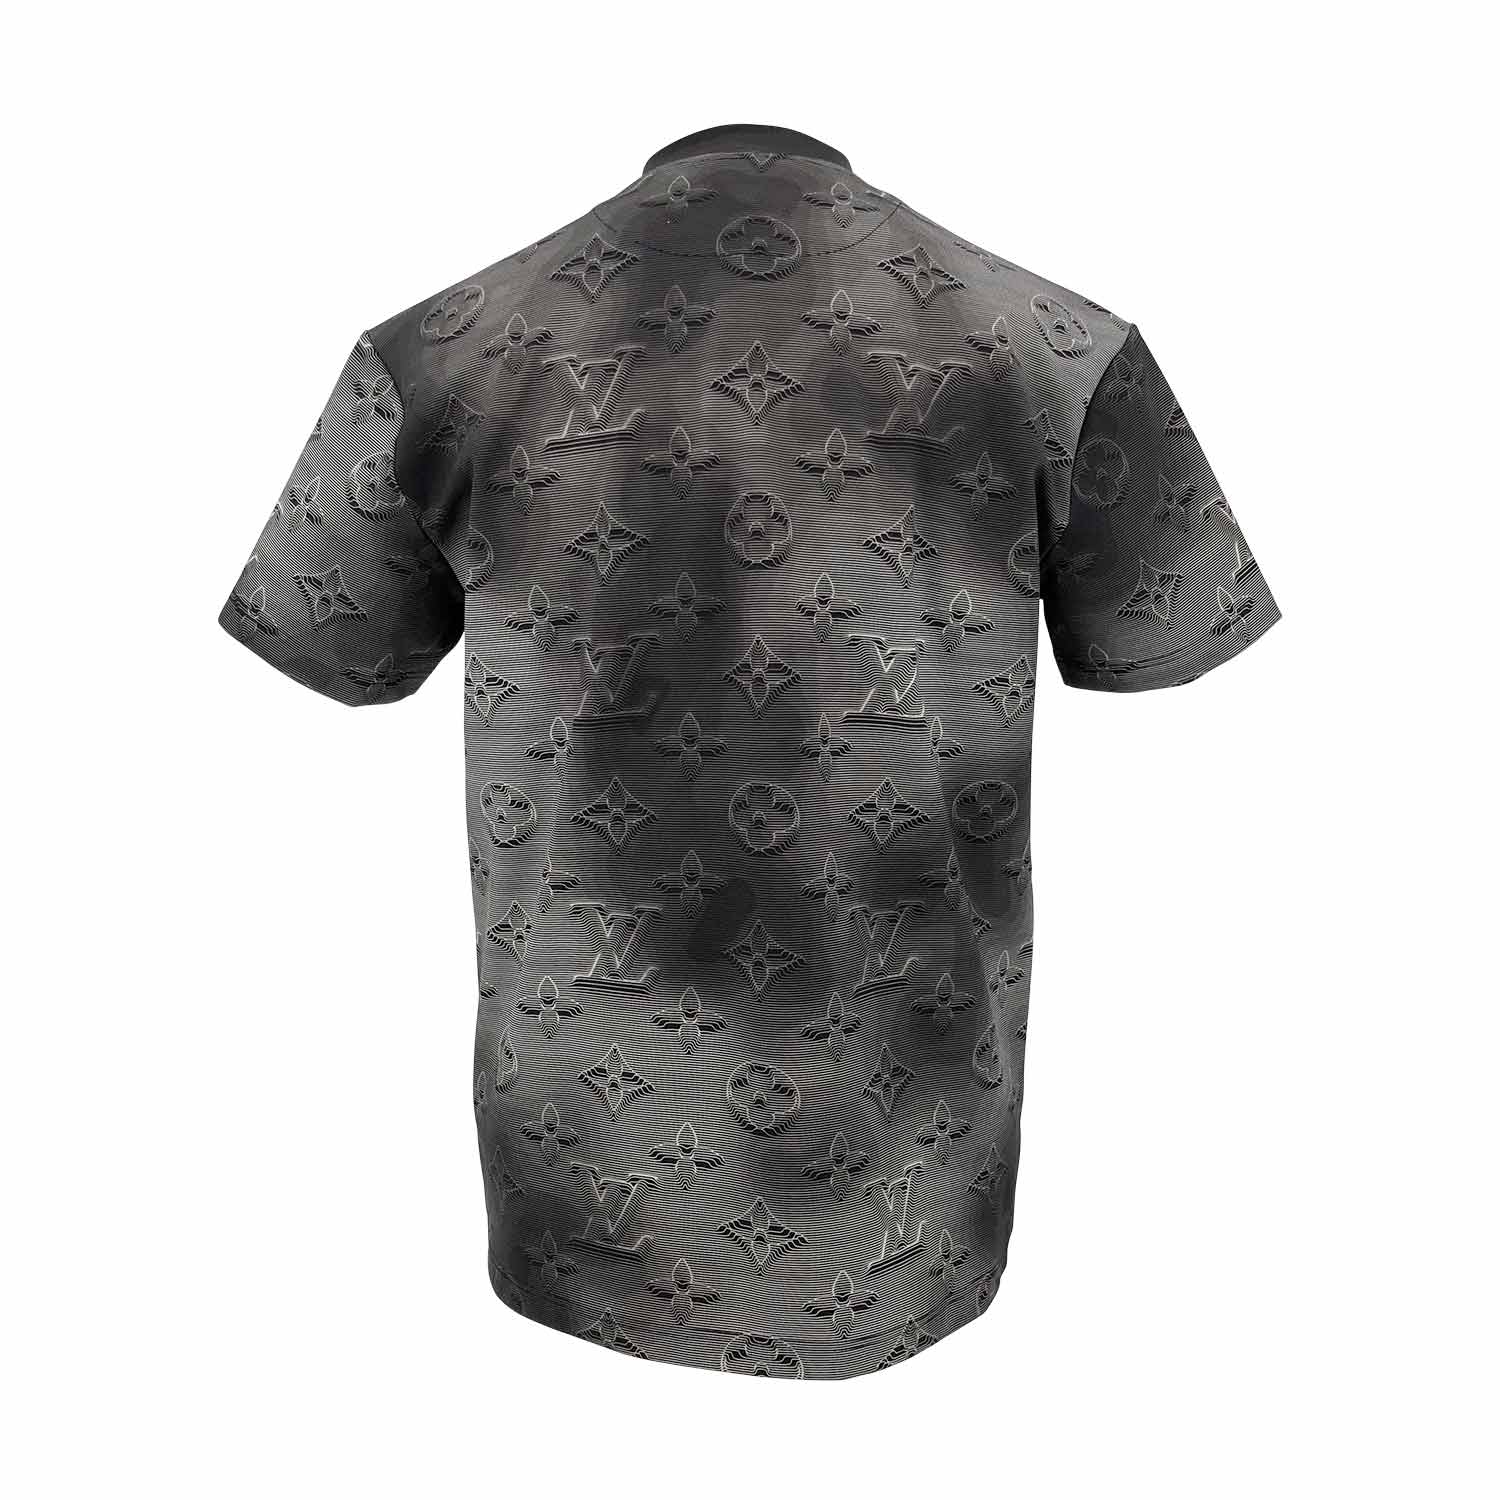 Louis Vuitton inside out t shirt mens grey medium  eBay